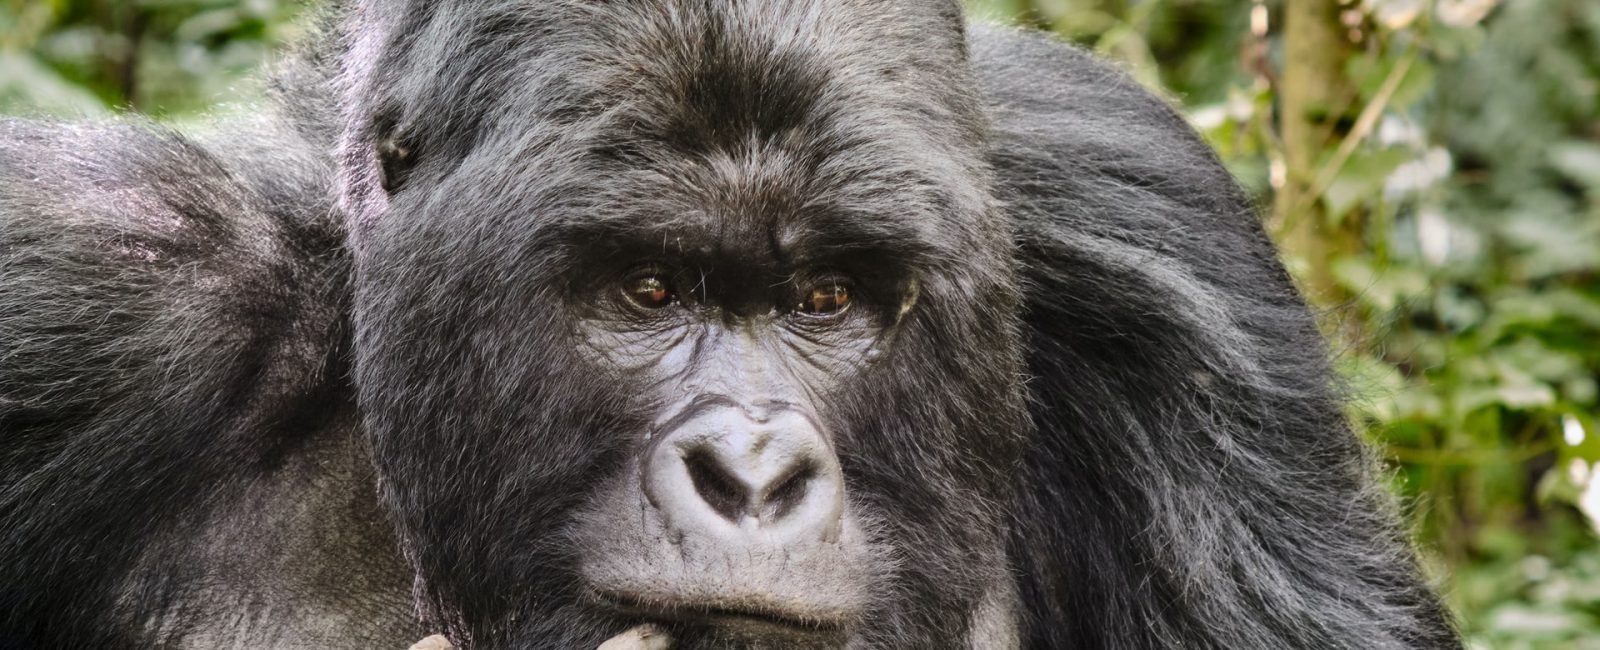 Gorilla Tracking Safari in Rwanda